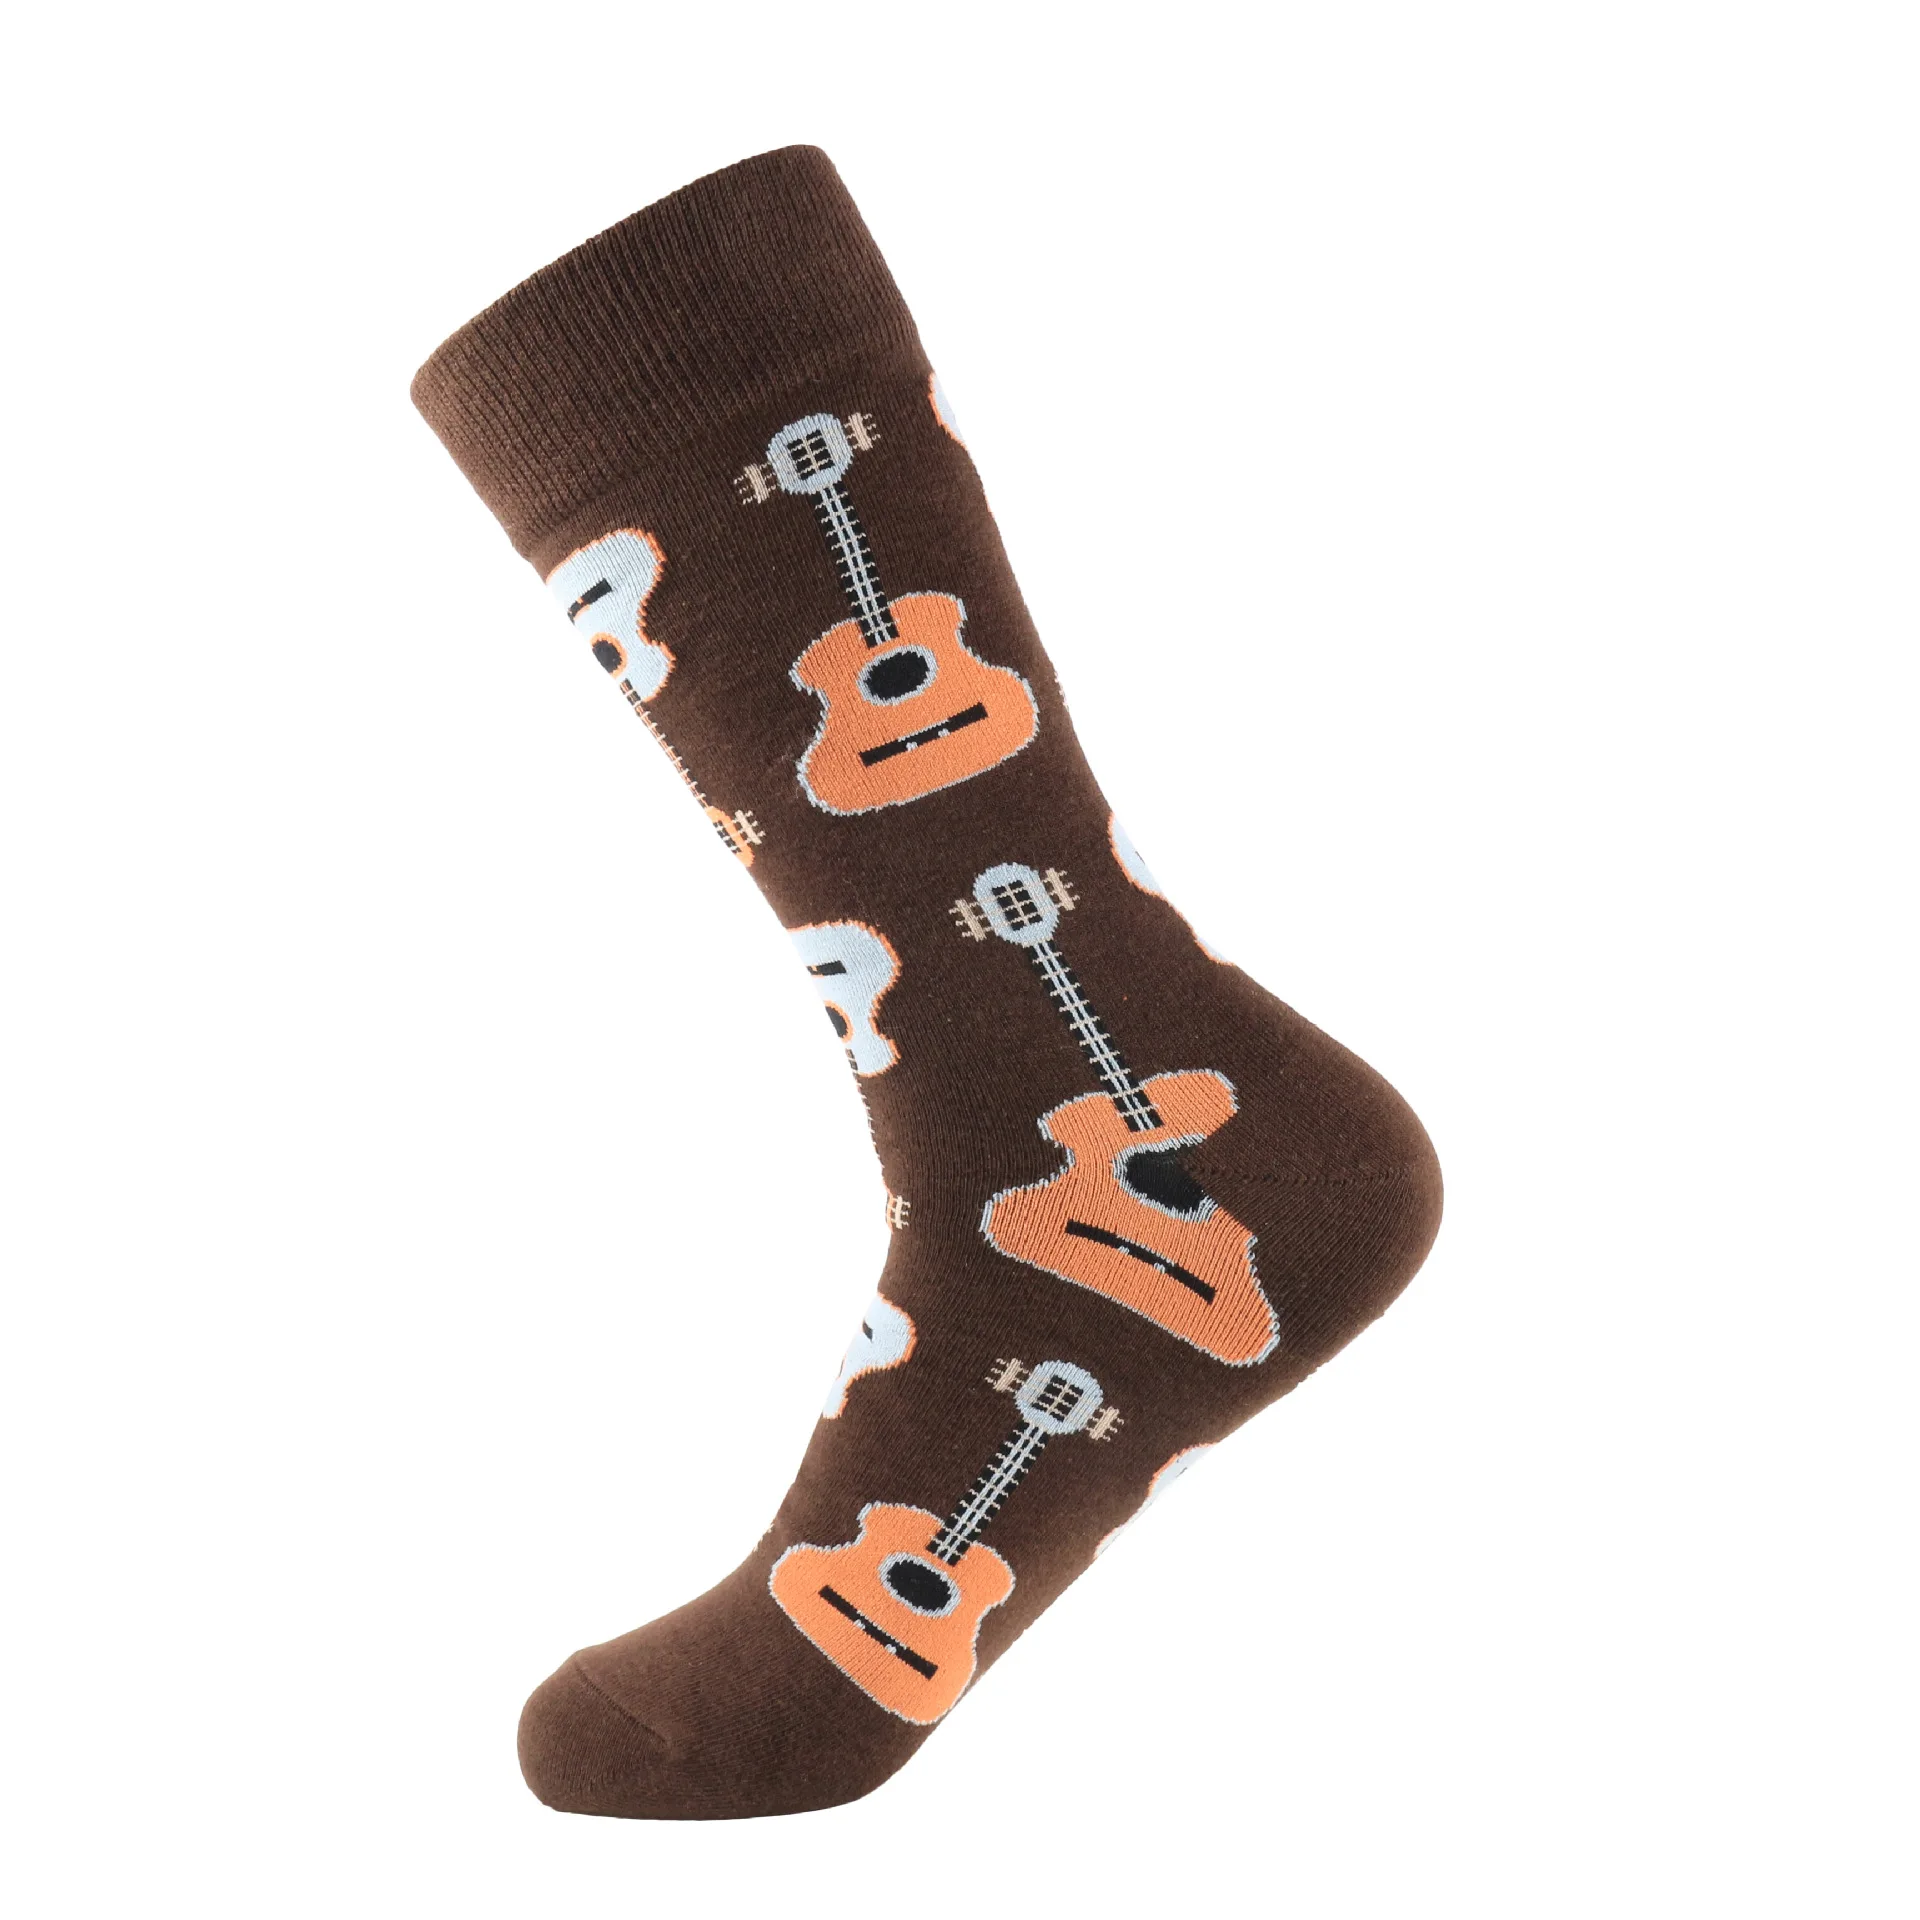 Хип носки мужские и женские уличные длинные носки Модные Спортивные Мягкие хлопковые носки с принтом баскетбольные носки чулки гольфы